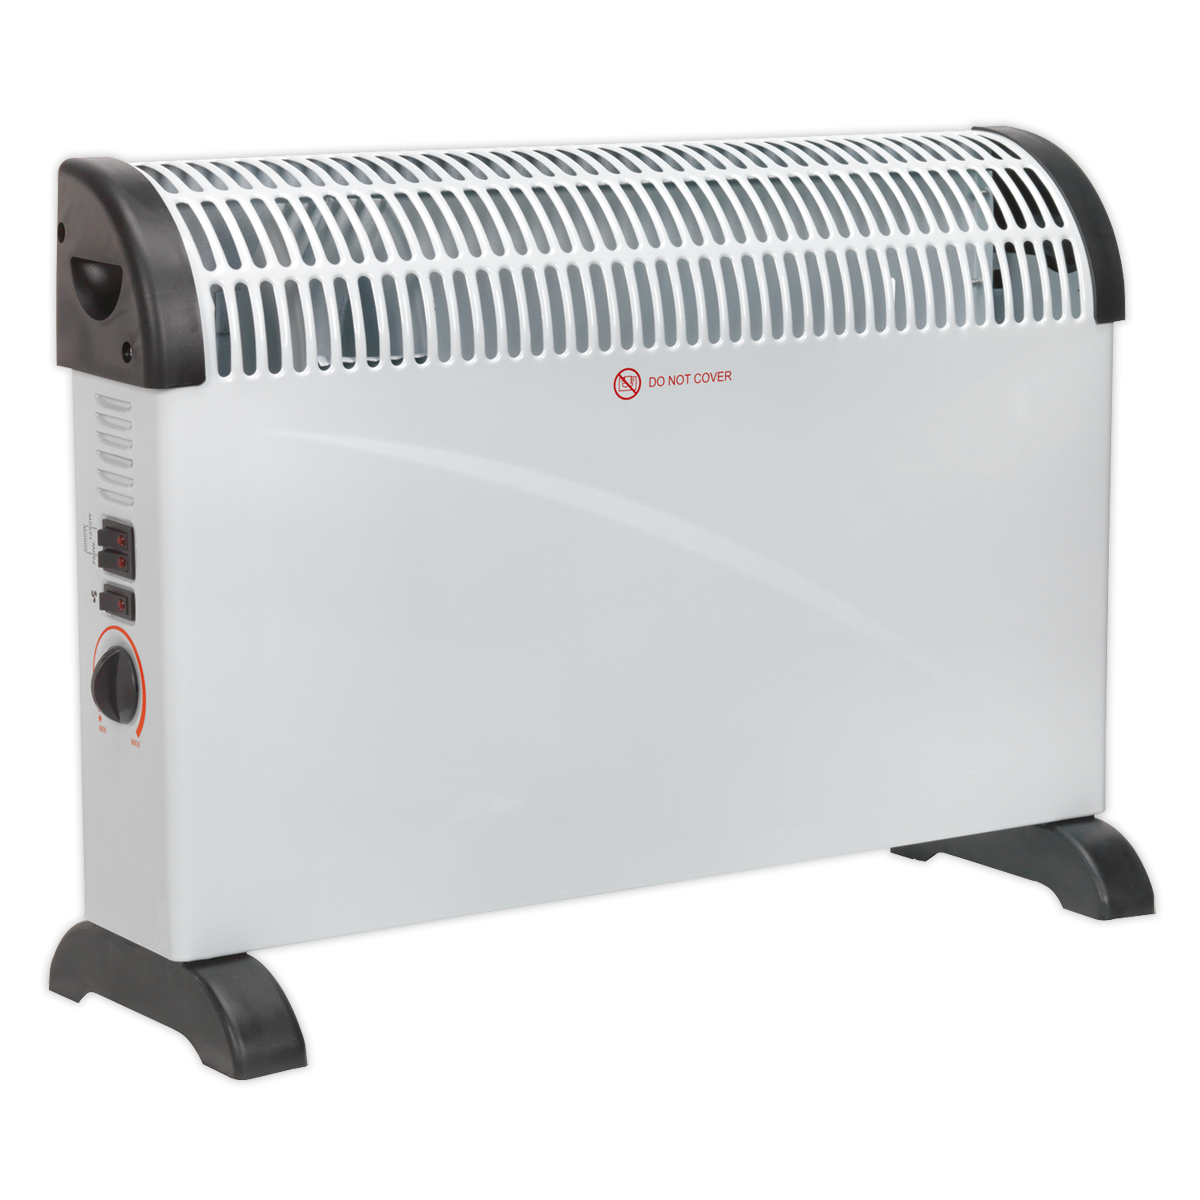 Sealey Convector Heater 2000W 3 Heat Settings Thermostat Turbo Fan